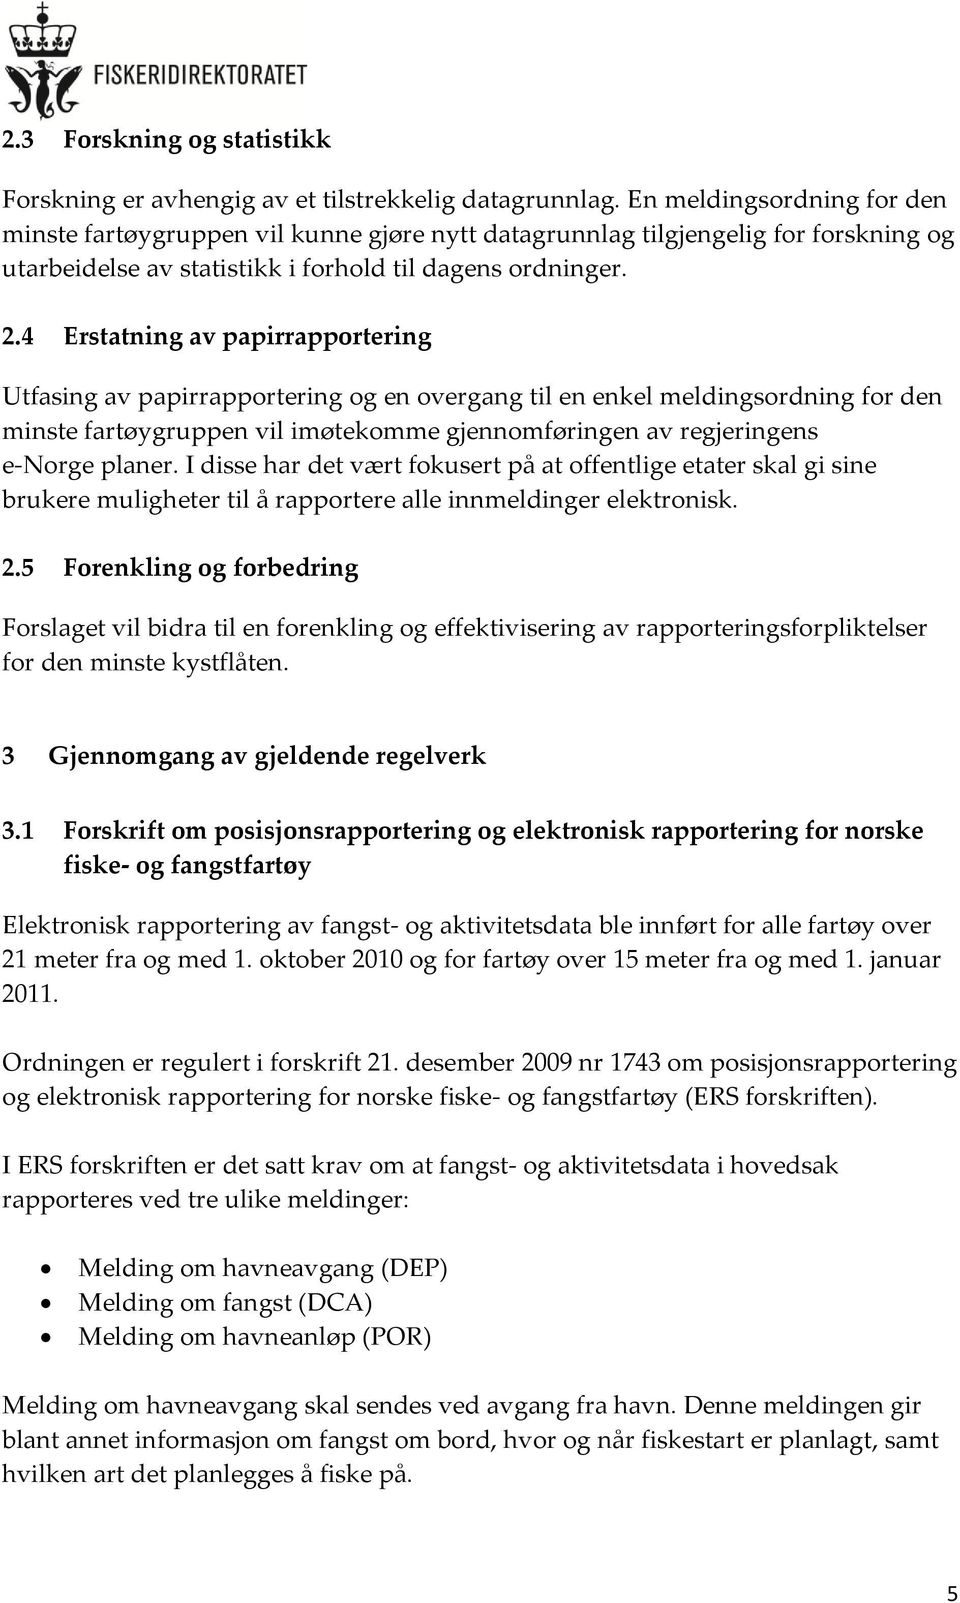 4 Erstatning av papirrapportering Utfasing av papirrapportering og en overgang til en enkel meldingsordning for den minste fartøygruppen vil imøtekomme gjennomføringen av regjeringens e-norge planer.